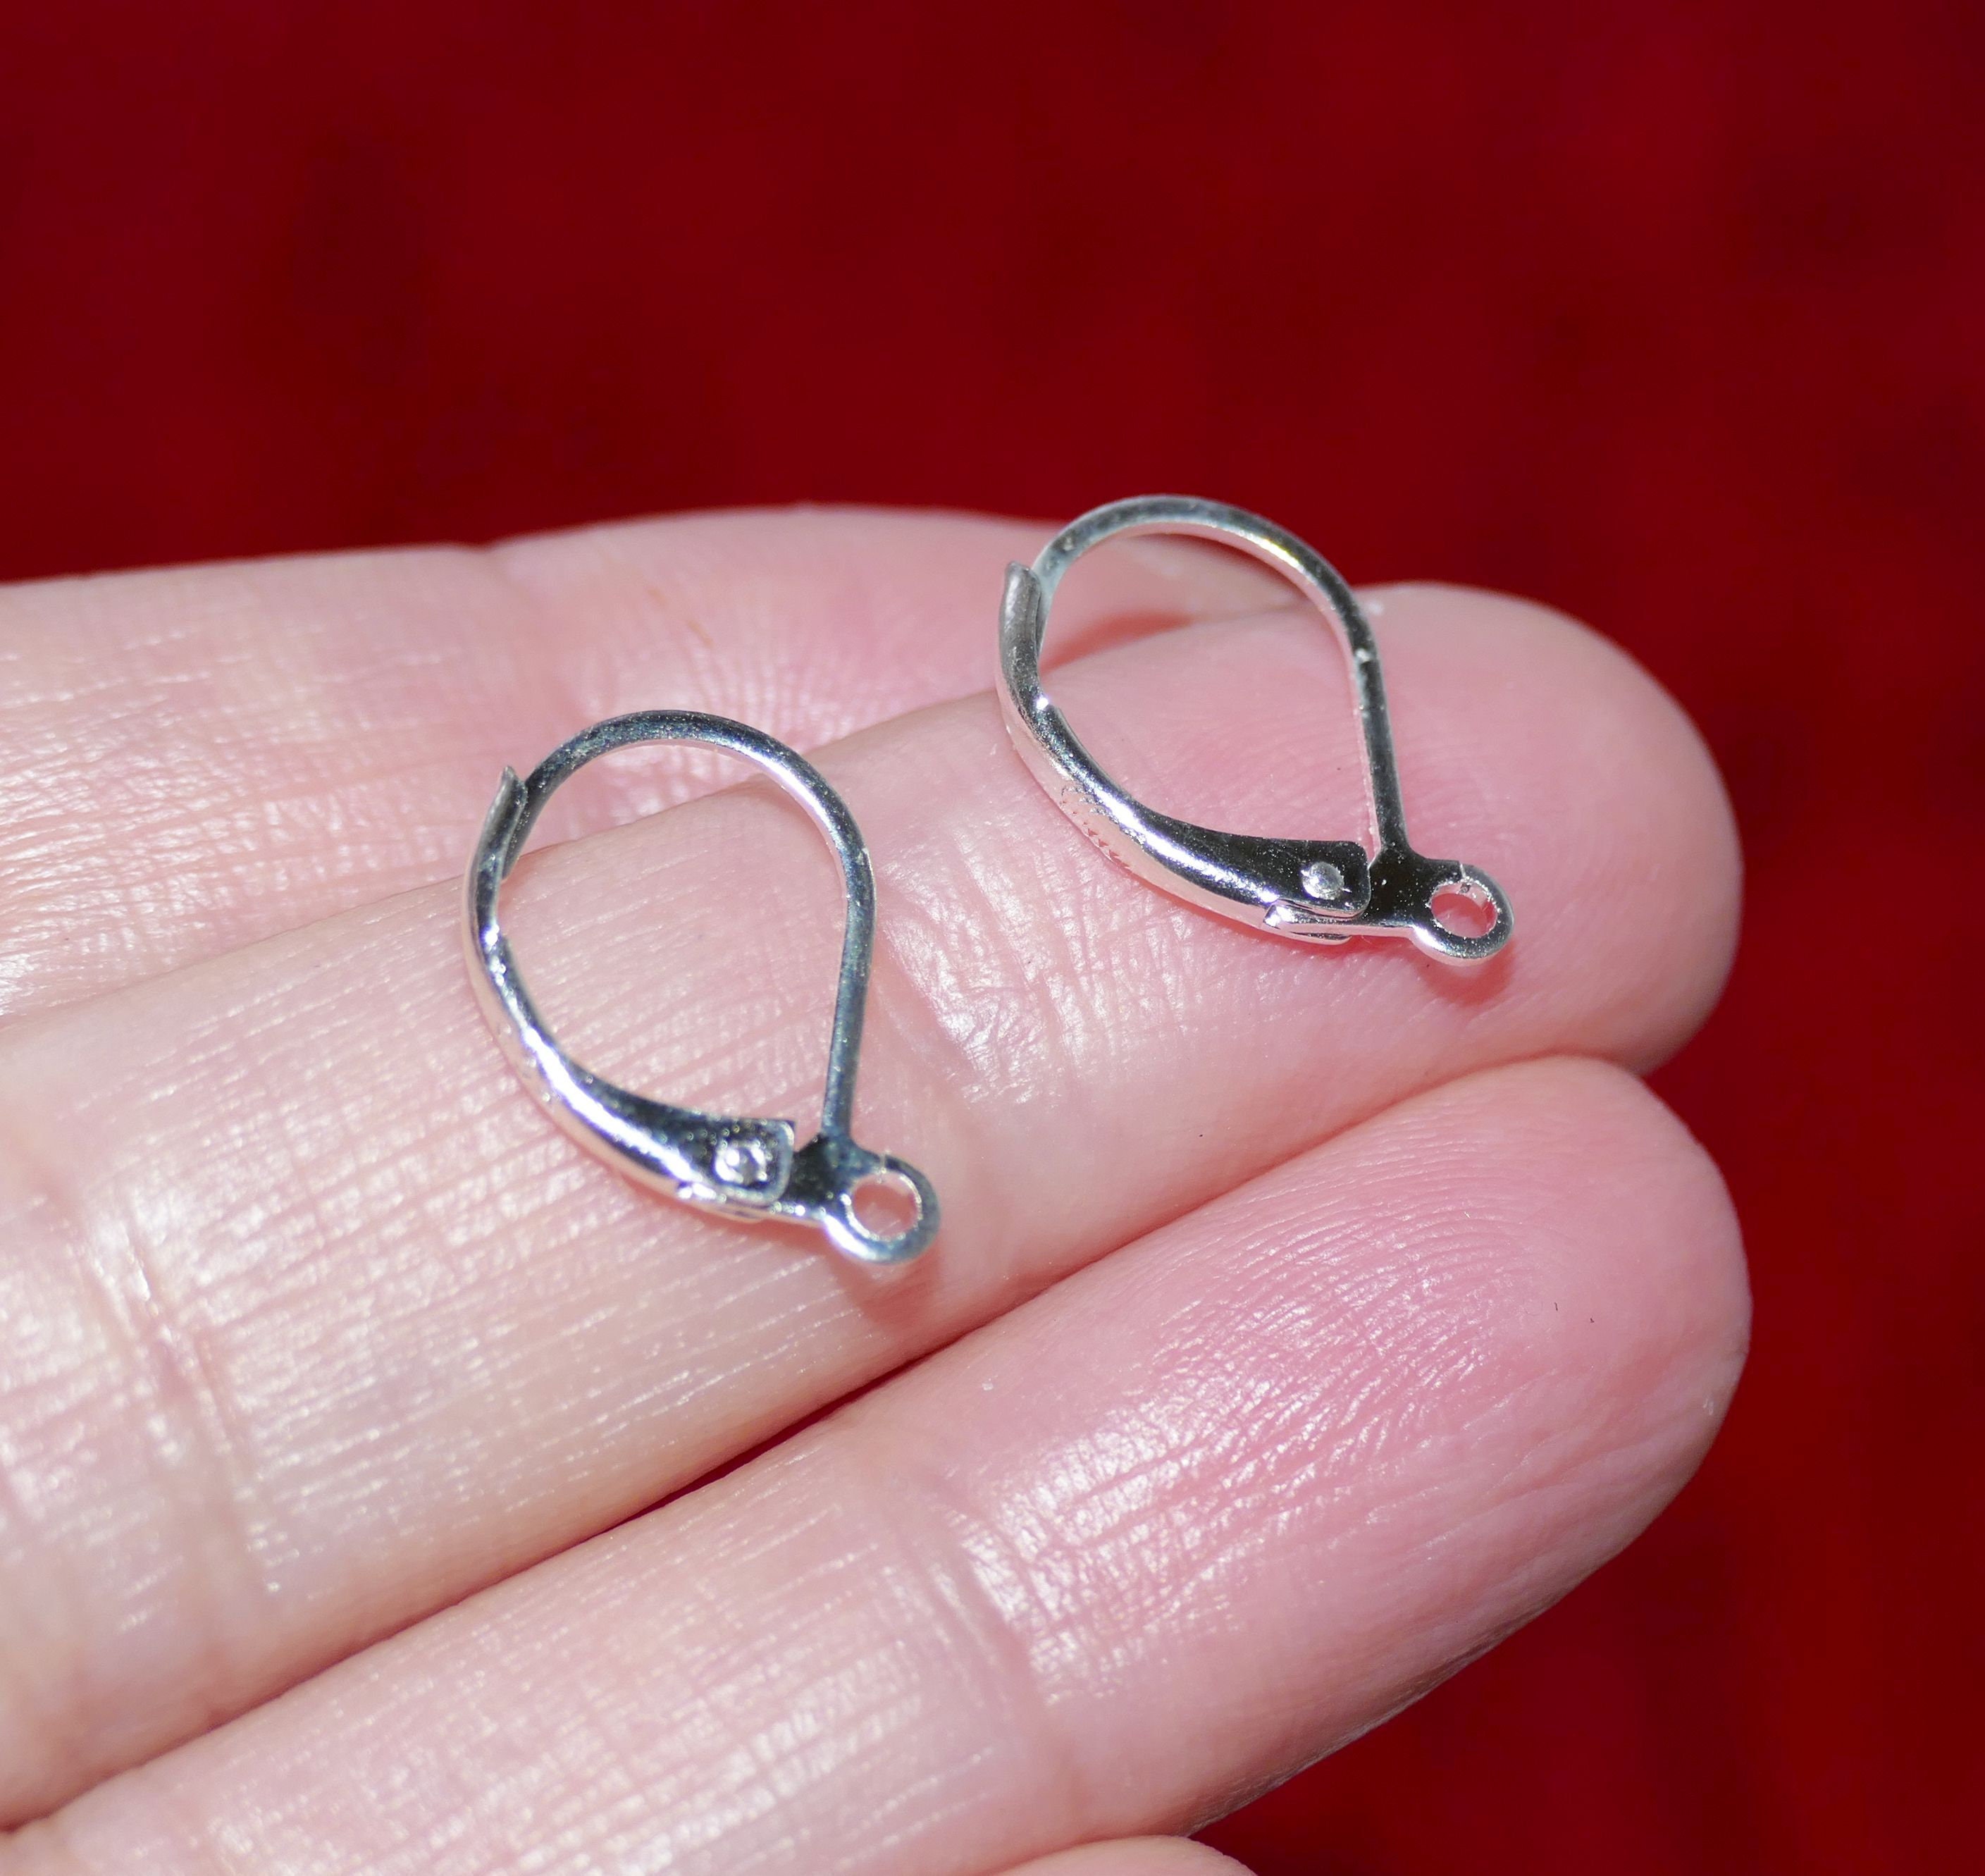 Solid Sterling Silver Earring Hook 925 Silver Earring Wire Findings (20mm)  G30005